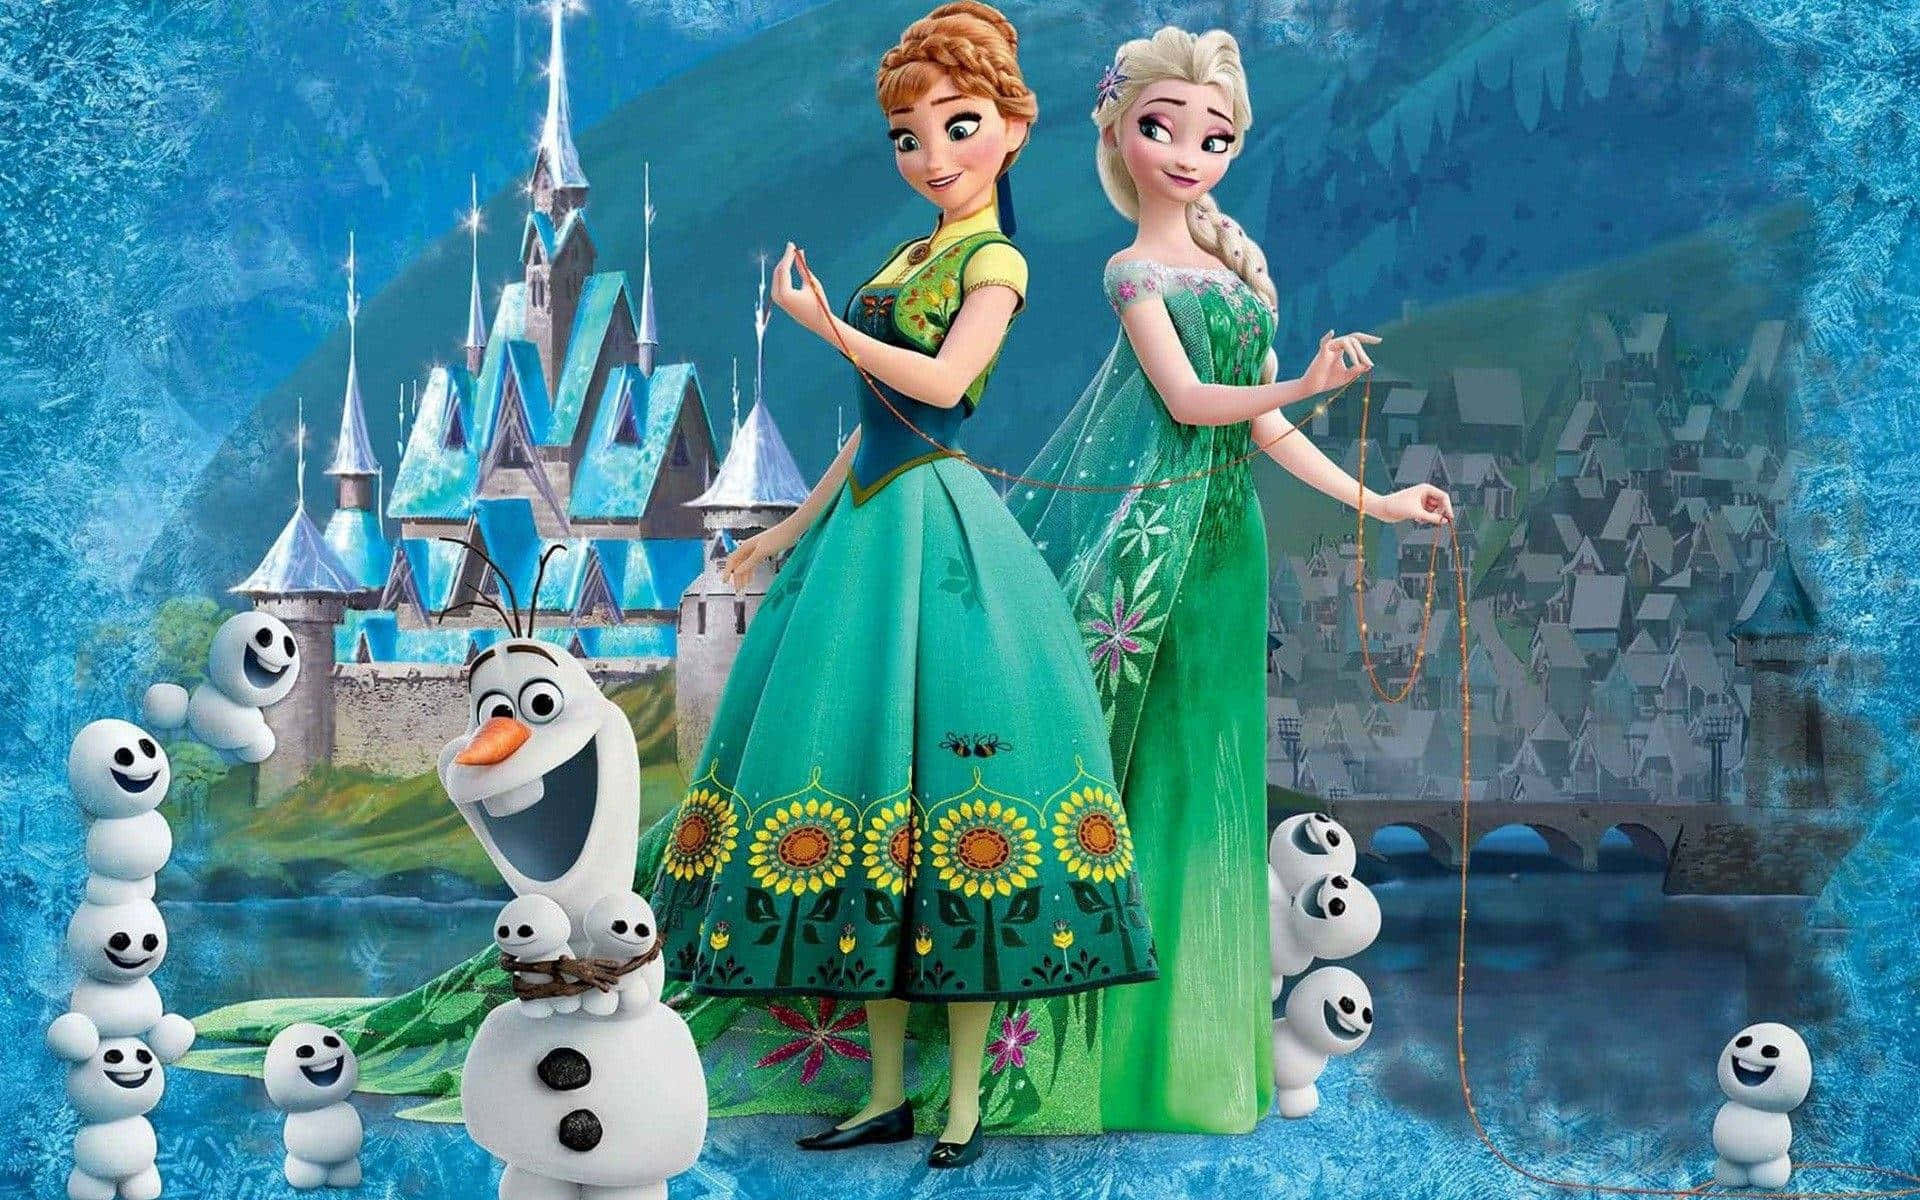 Søstreneanna Og Elsa Omfavner Hinanden I Dette Fantastiske Billede Fra Disney's Frost 2.